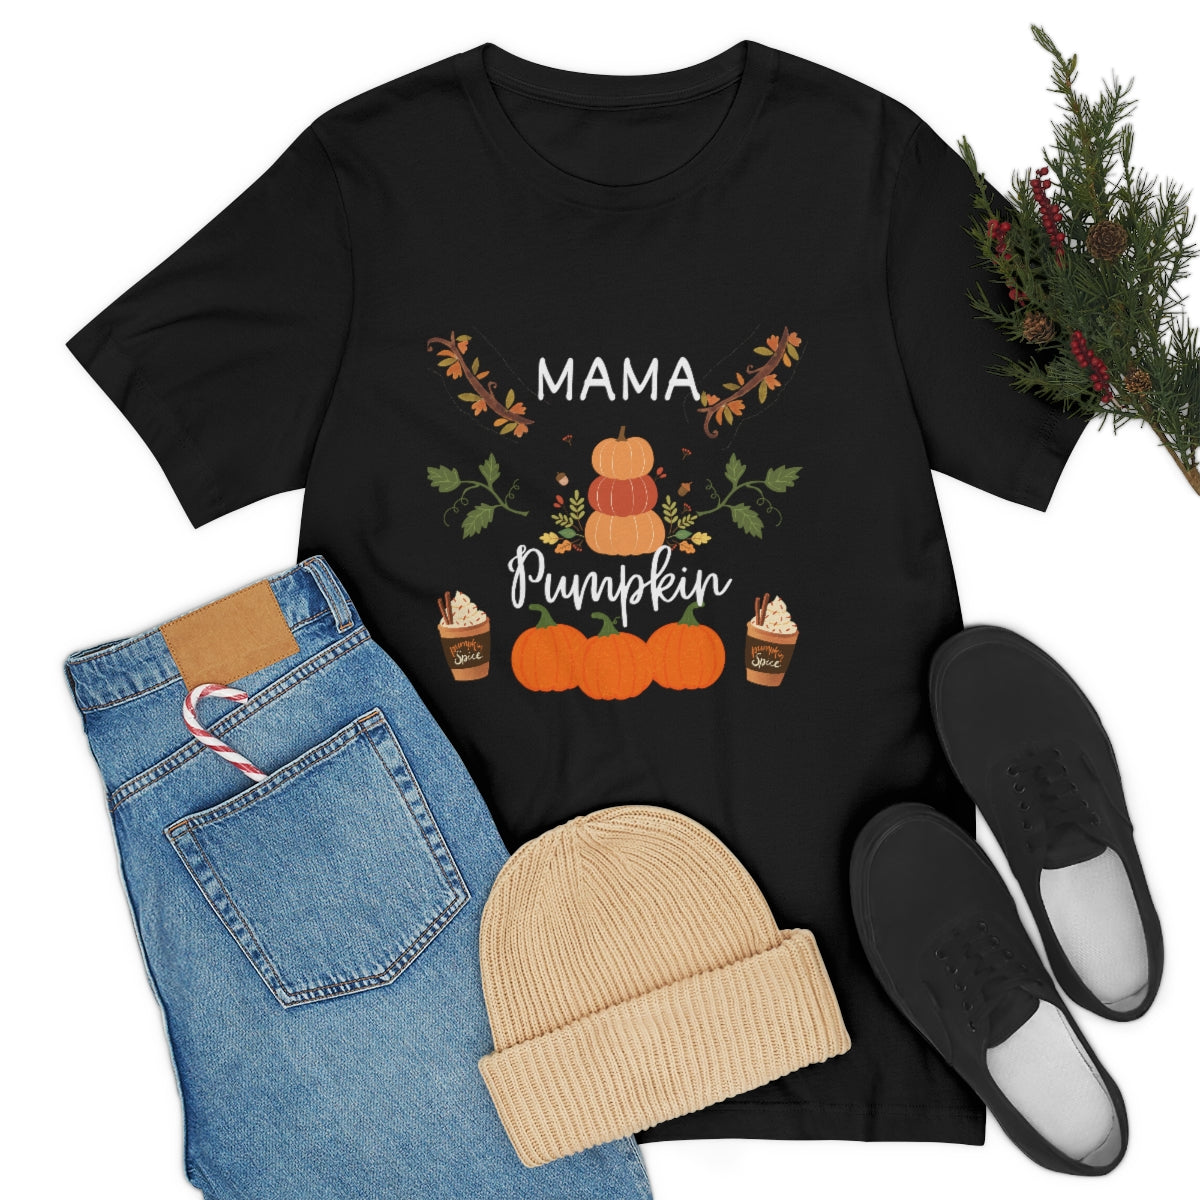 Mama Pumpkin Women T-Shirt